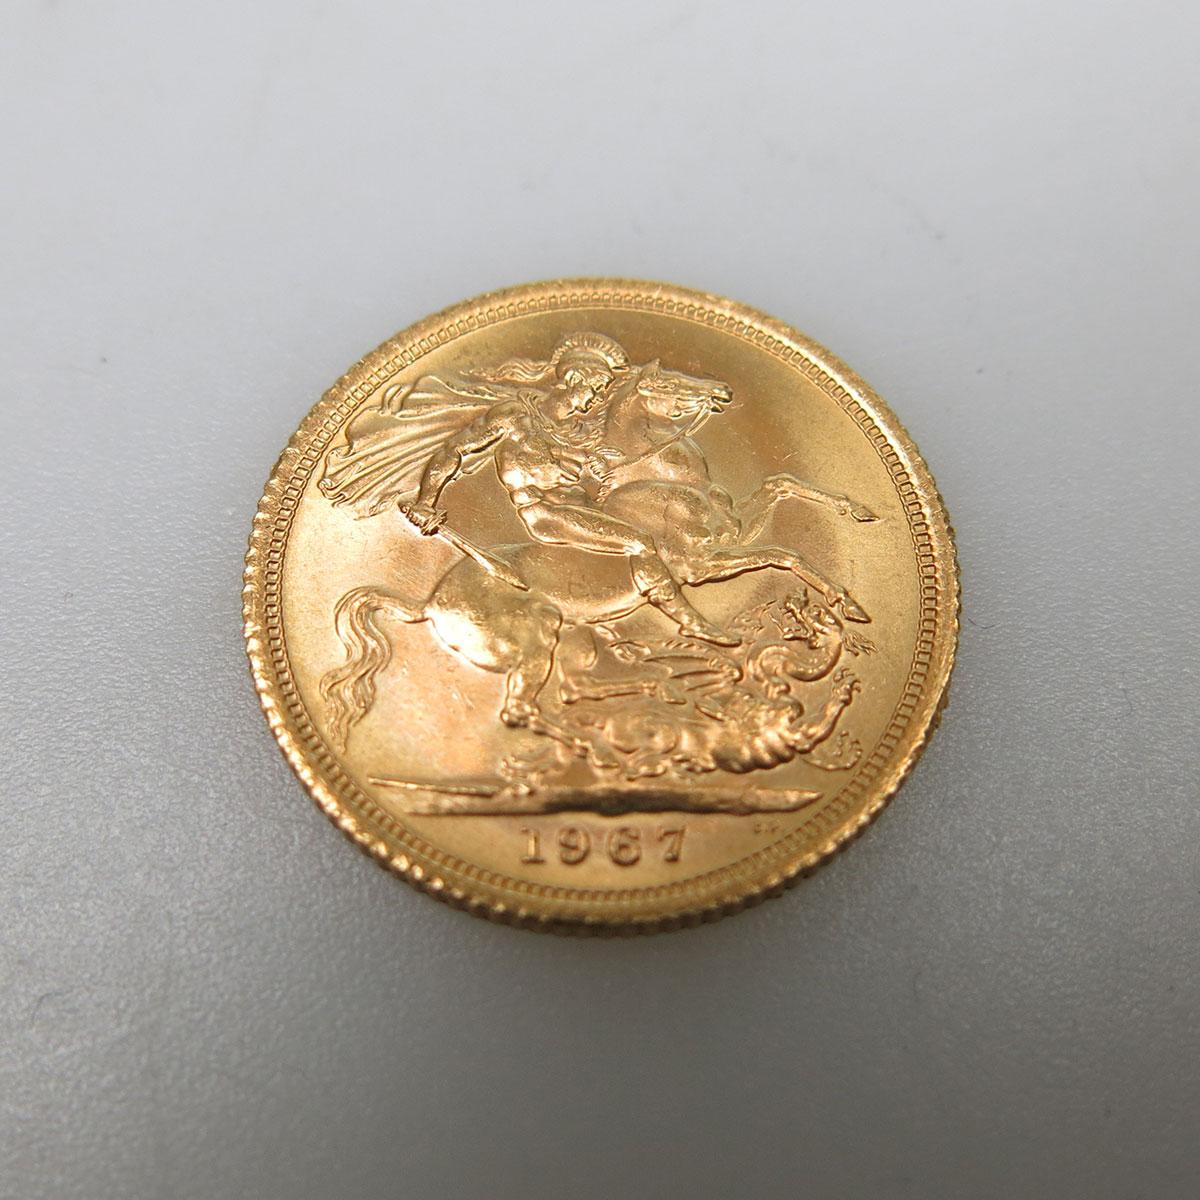 British 1967 Gold Sovereign